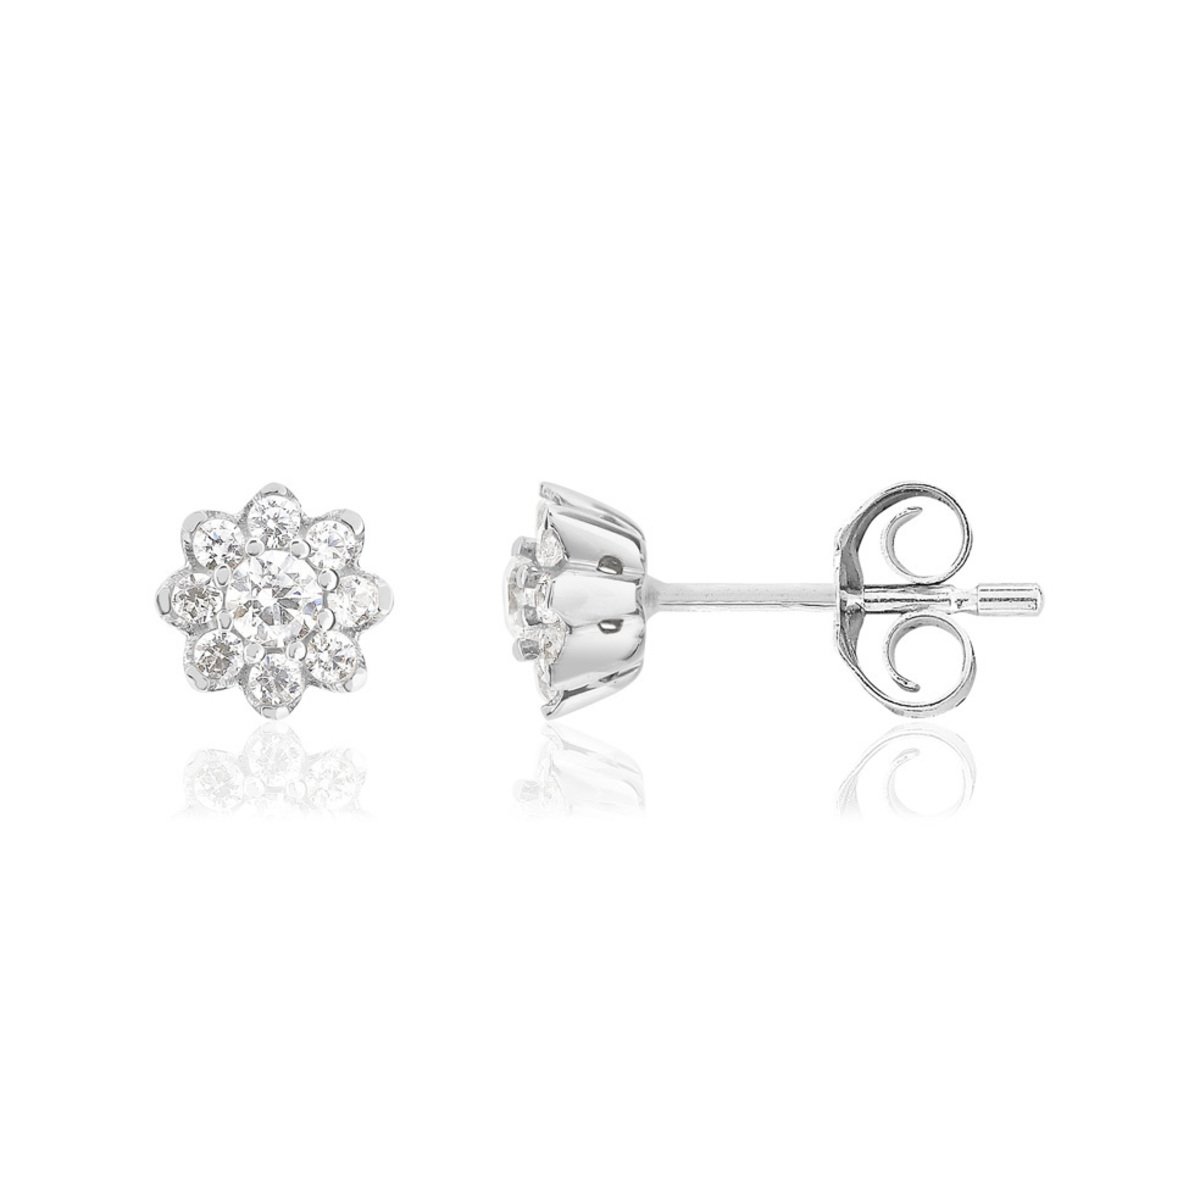 Boucles d'oreille or 750 blanc fleur diamants synthétiques 0.30 carat